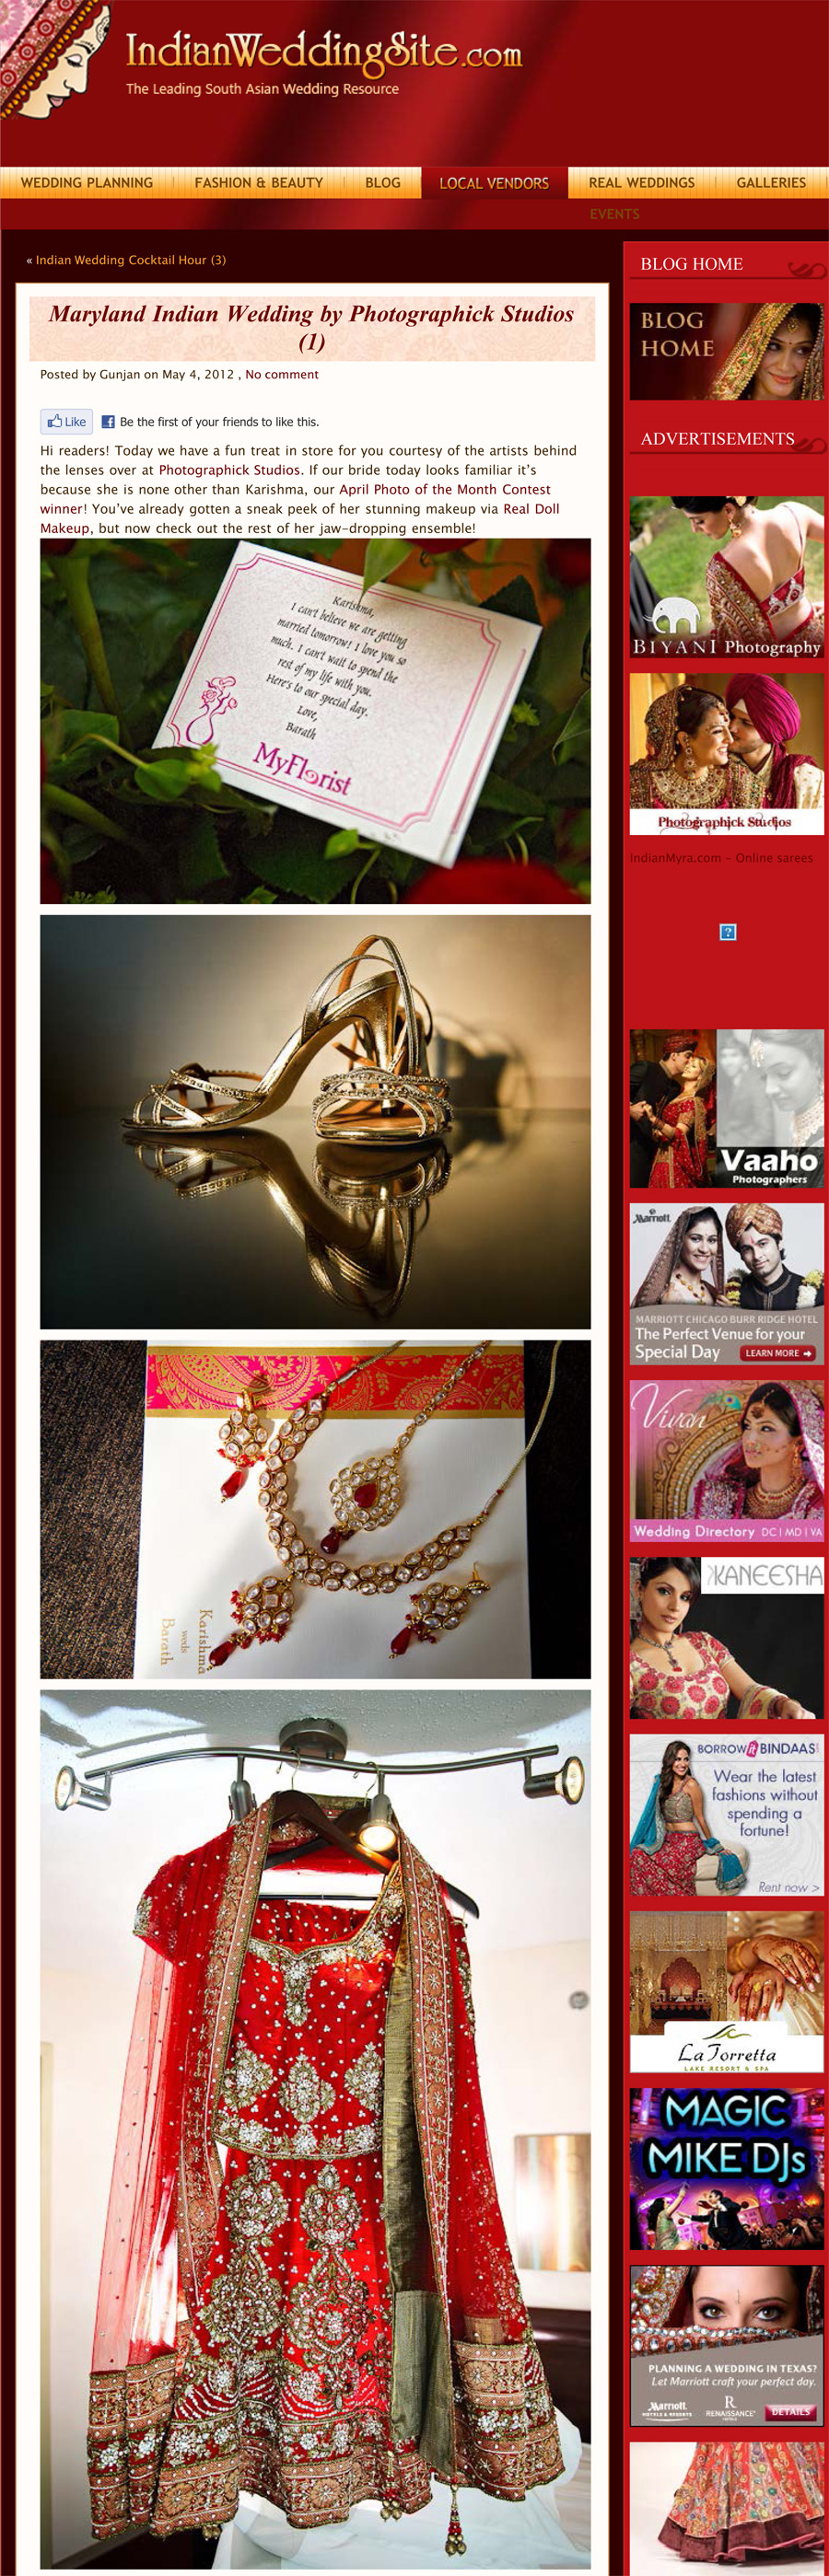 , Washington DC Wedding of Karishma and Barath Published on Indian Wedding Site!